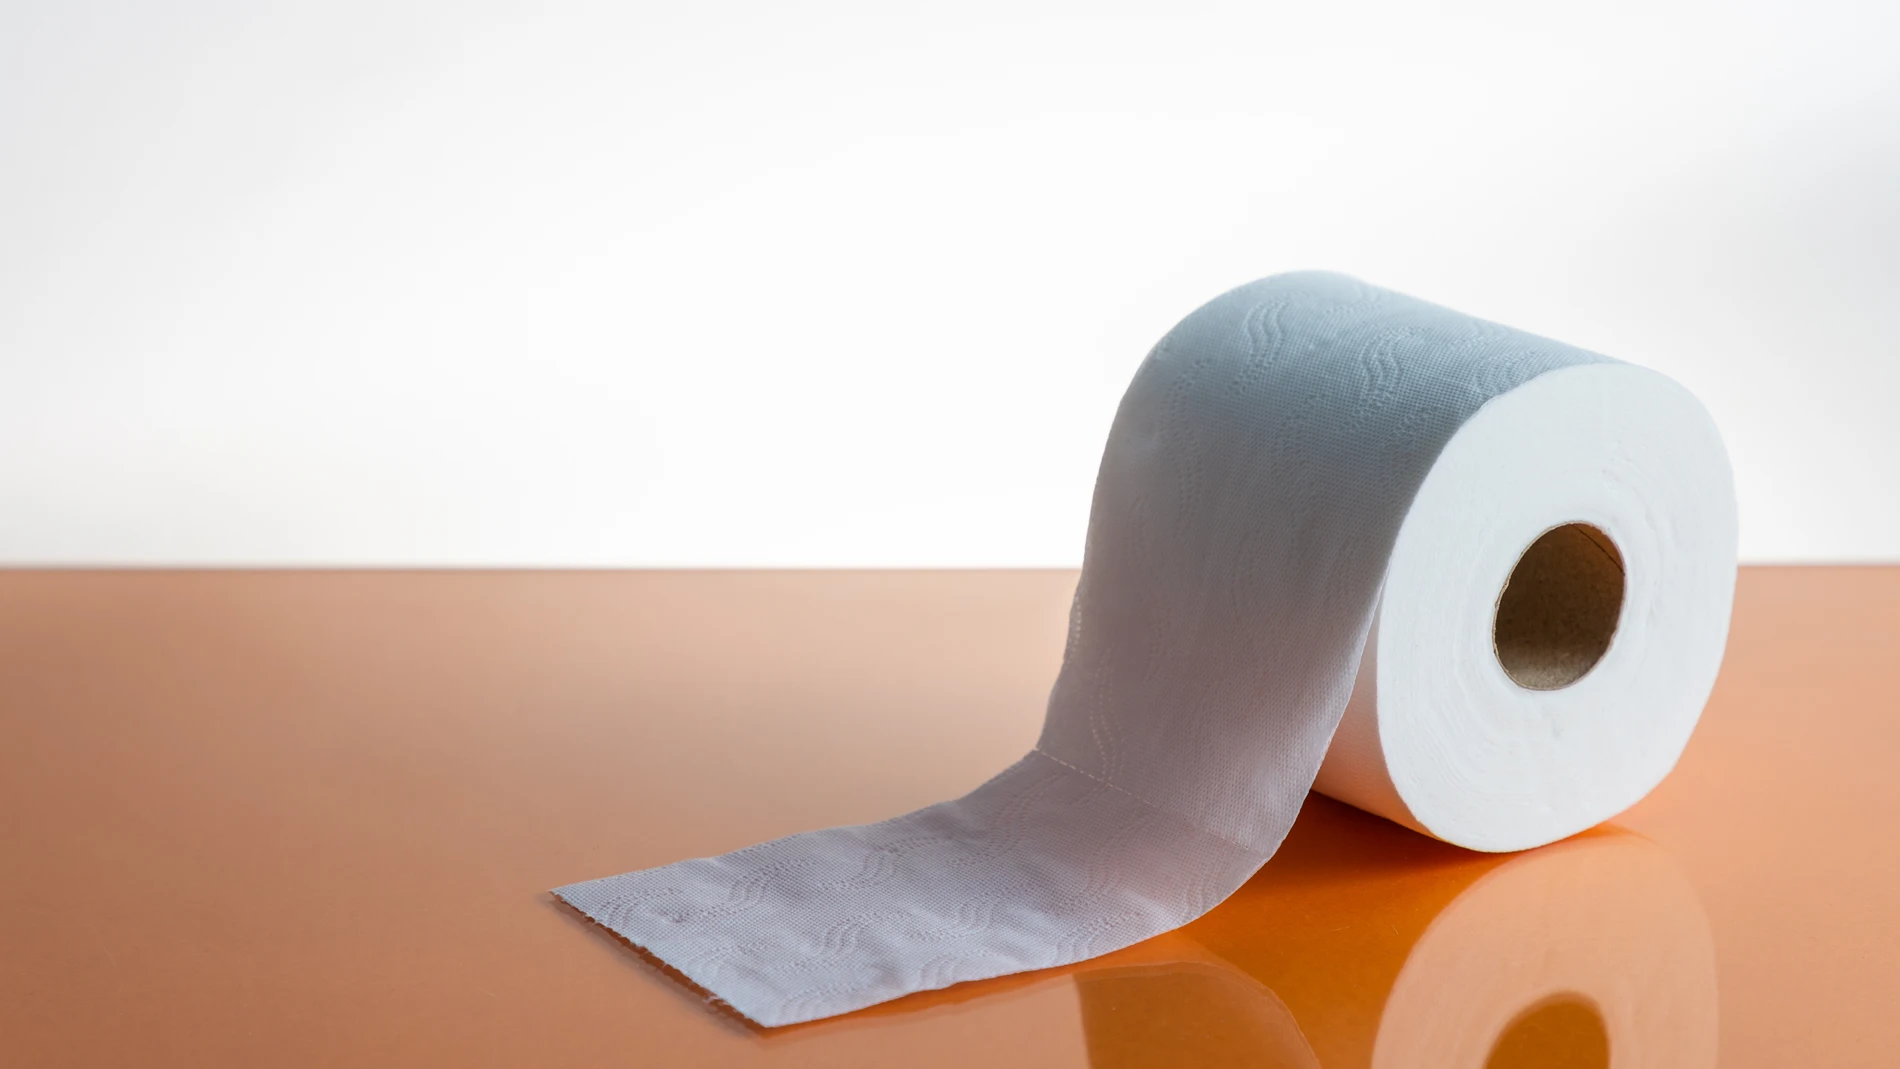 Los rollos de papel higiénico se hacen más pequeños. Culpa a la Fed.